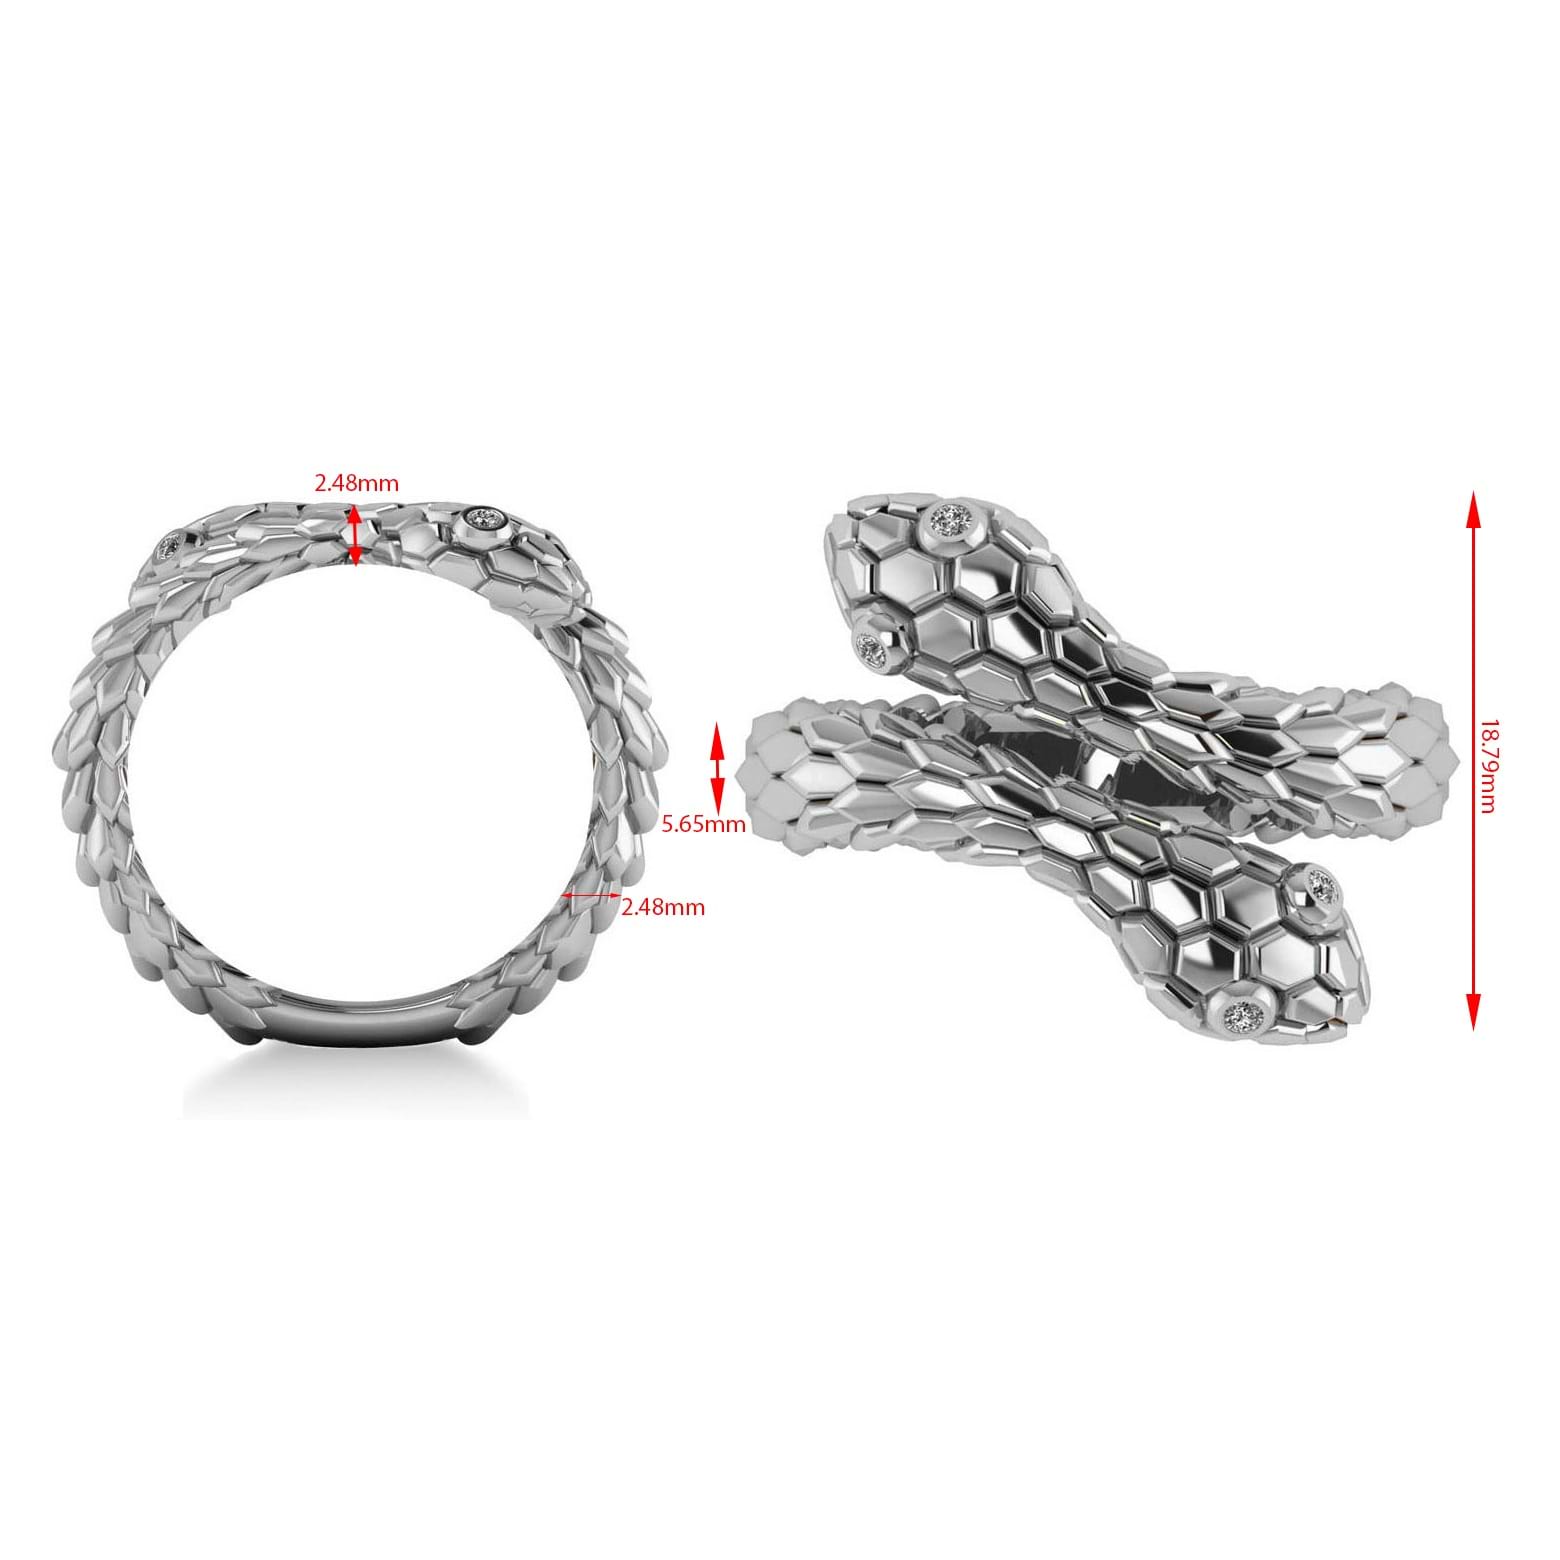 Diamond Double Snake Fashion Ring 14k White Gold (0.04ct)